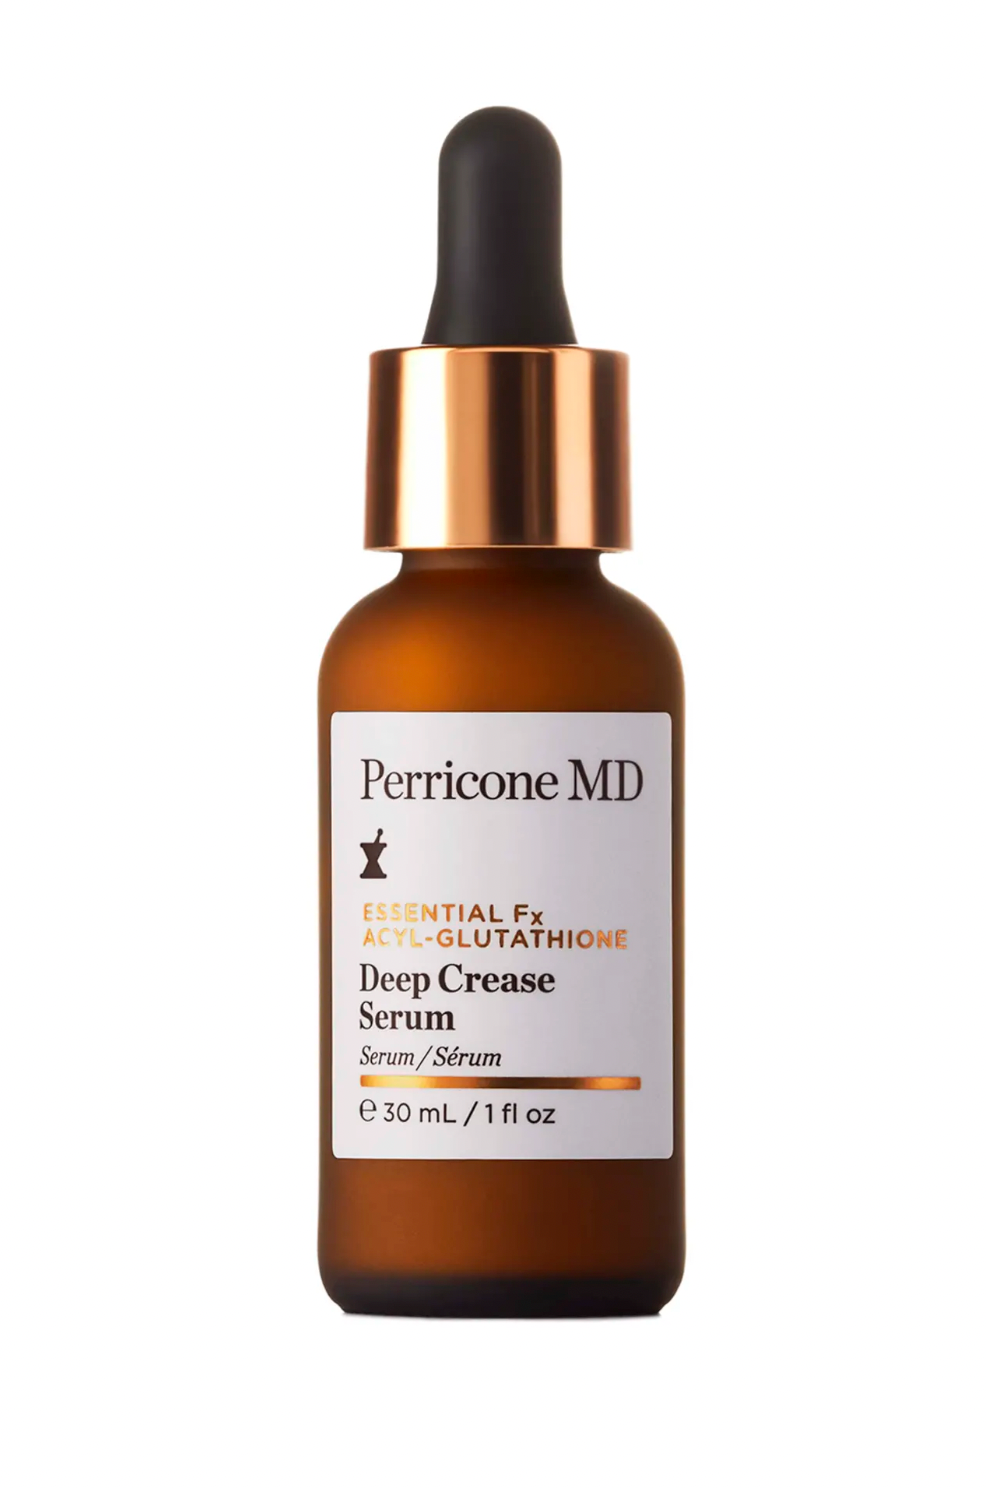 Perricone MD Essential FX Acyl-Glutathione Deep Crease Serum, 1.0 oz.